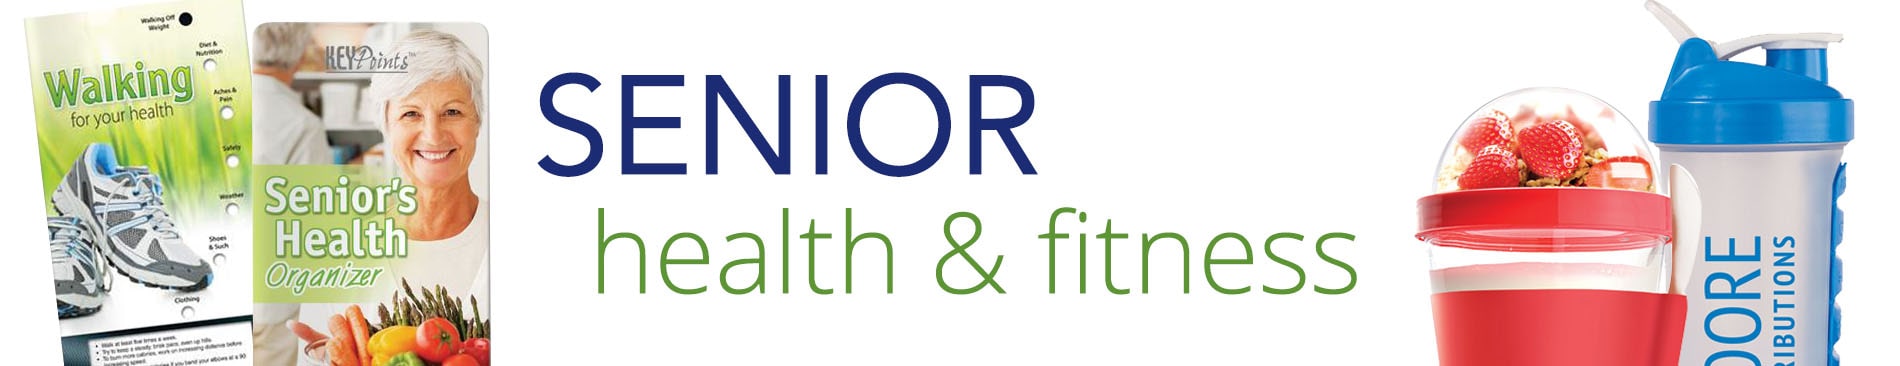 health fair ideas for seniors